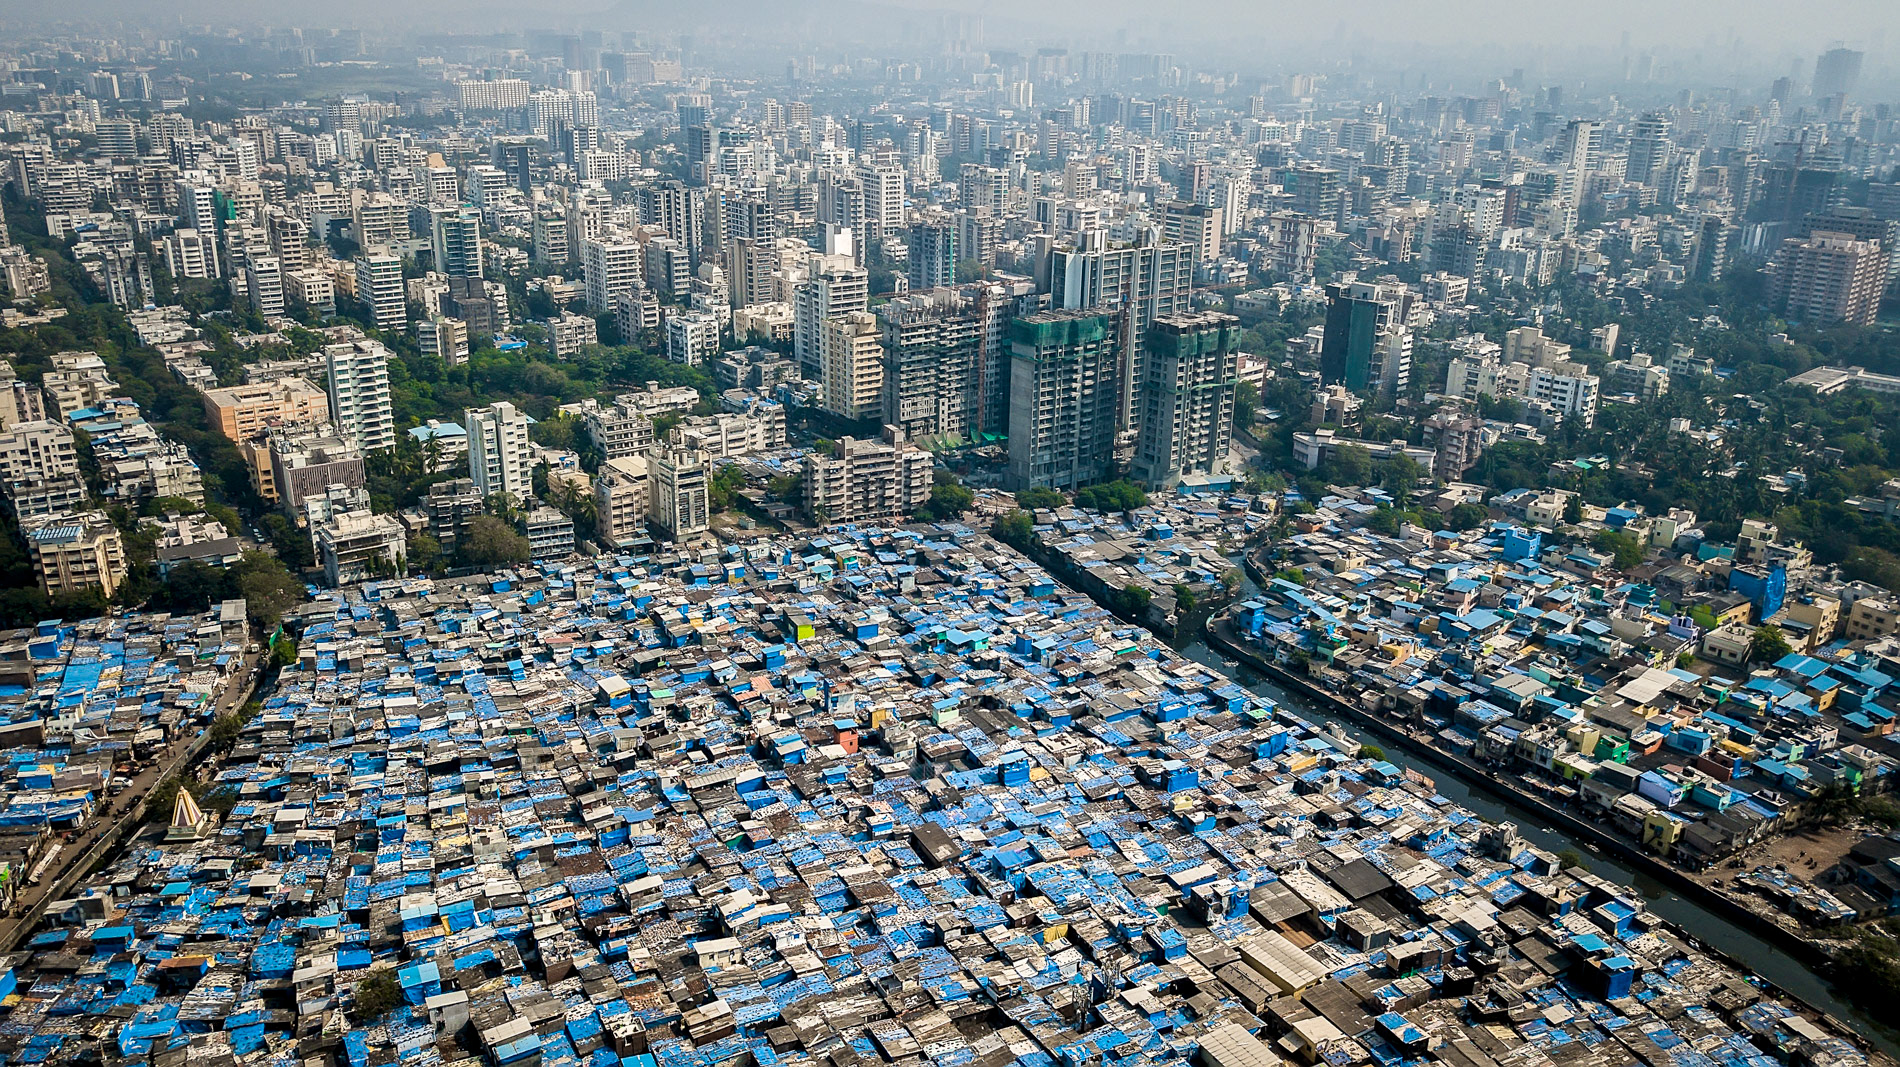 Thành phố Mumbai của Ấn Độ dự kiến sẽ lọt vào top 20 thành phố giàu có nhất thế giới vào năm 2030. Ấn Độ hiện xếp thứ ba toàn cầu về số siêu triệu phú với 1.132 người. Ảnh: unequalscenes.com